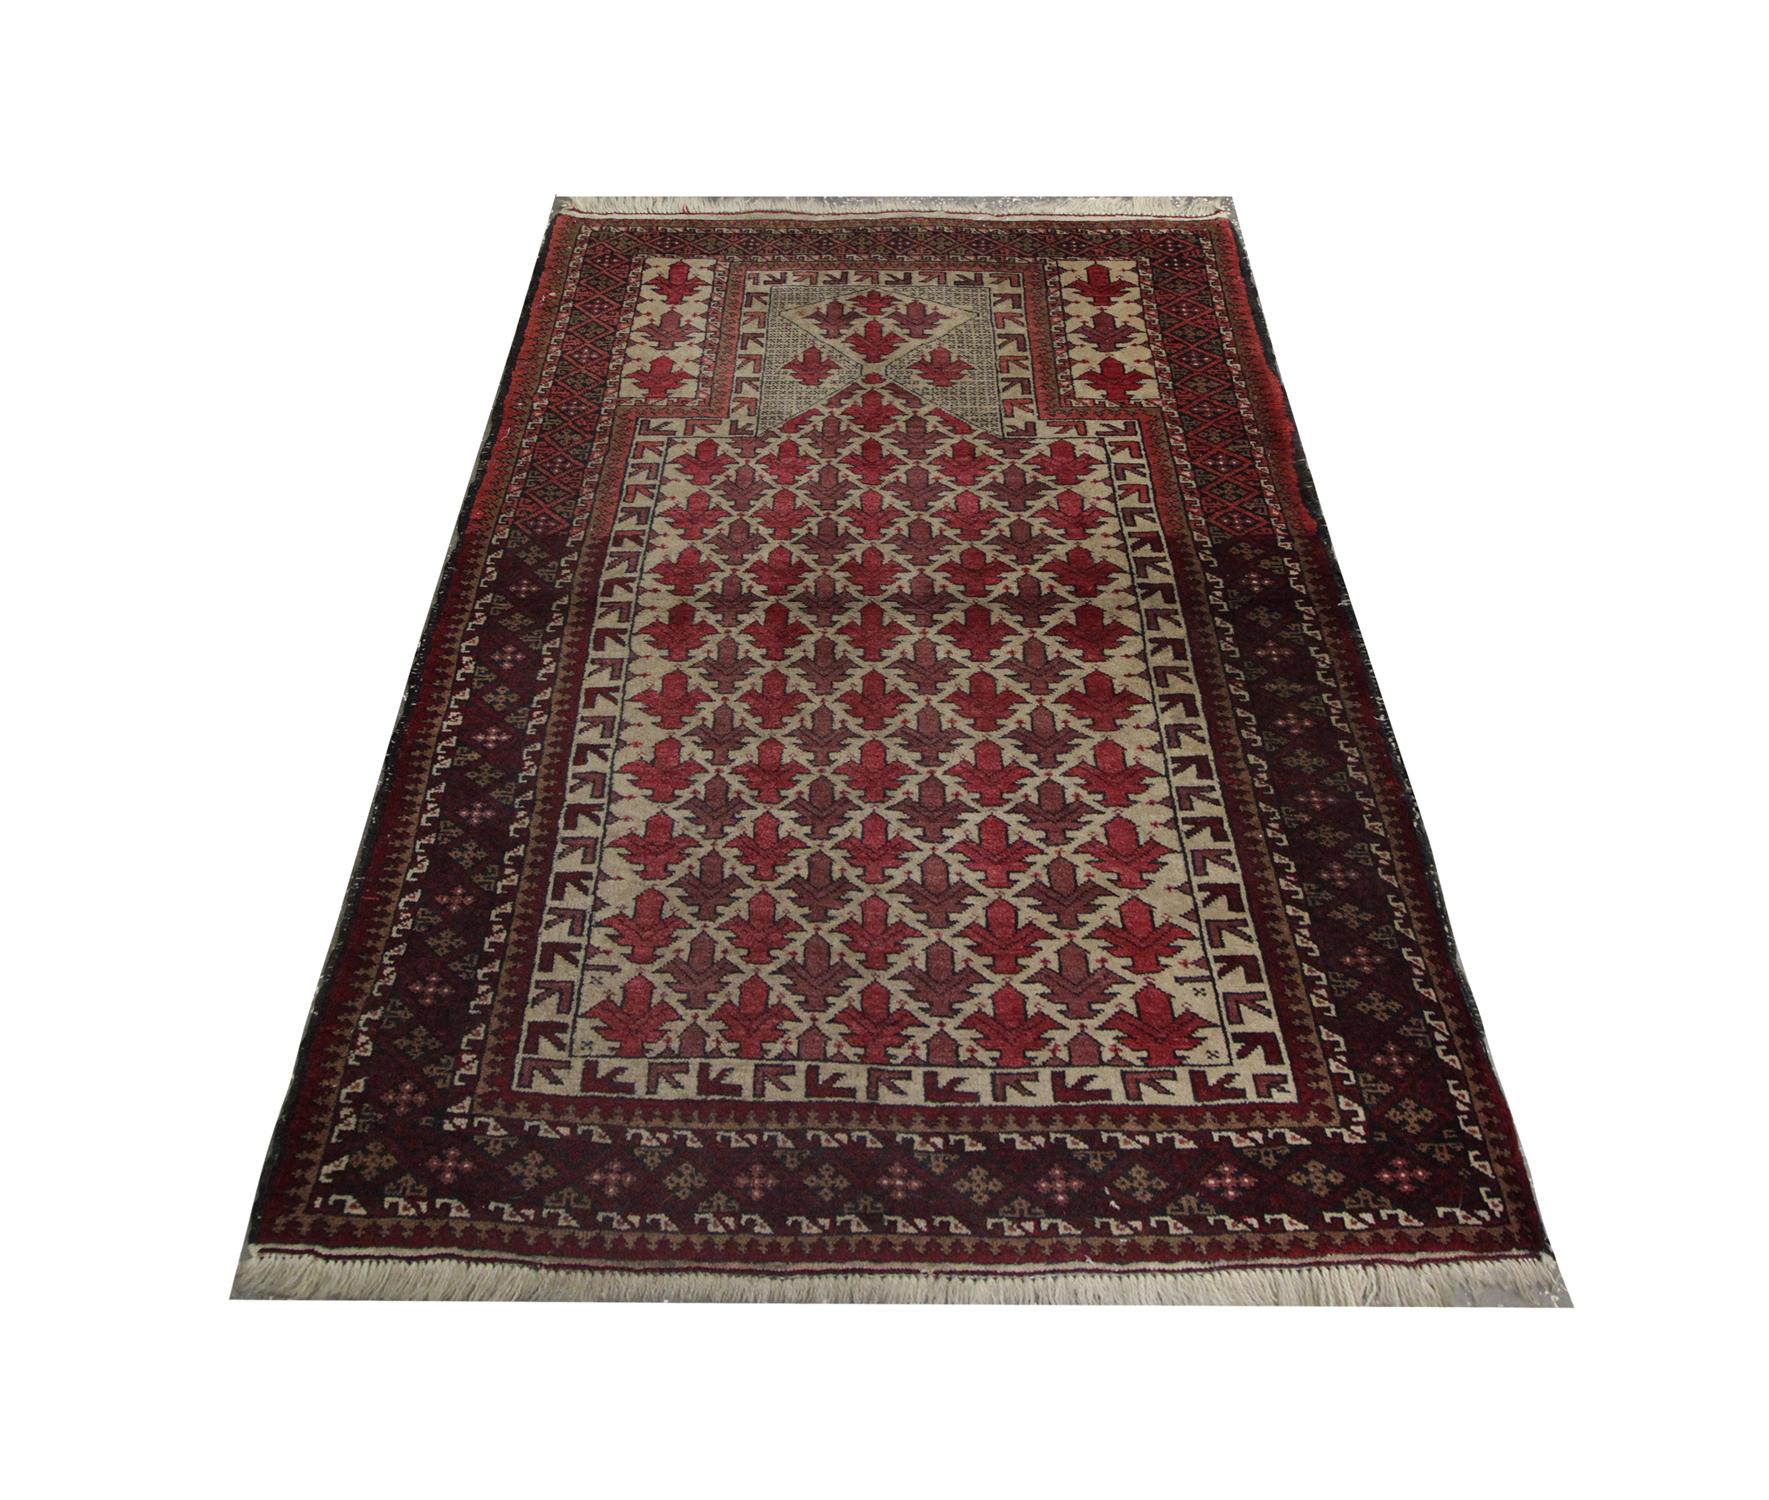 Des rouges profonds ont été utilisés comme couleurs primaires dans ce tapis afghan ancien de haute qualité fabriqué à la main, avec un motif répétitif très détaillé qui a été tissé à la main en 1940 avec de la laine et du coton filés à la main et